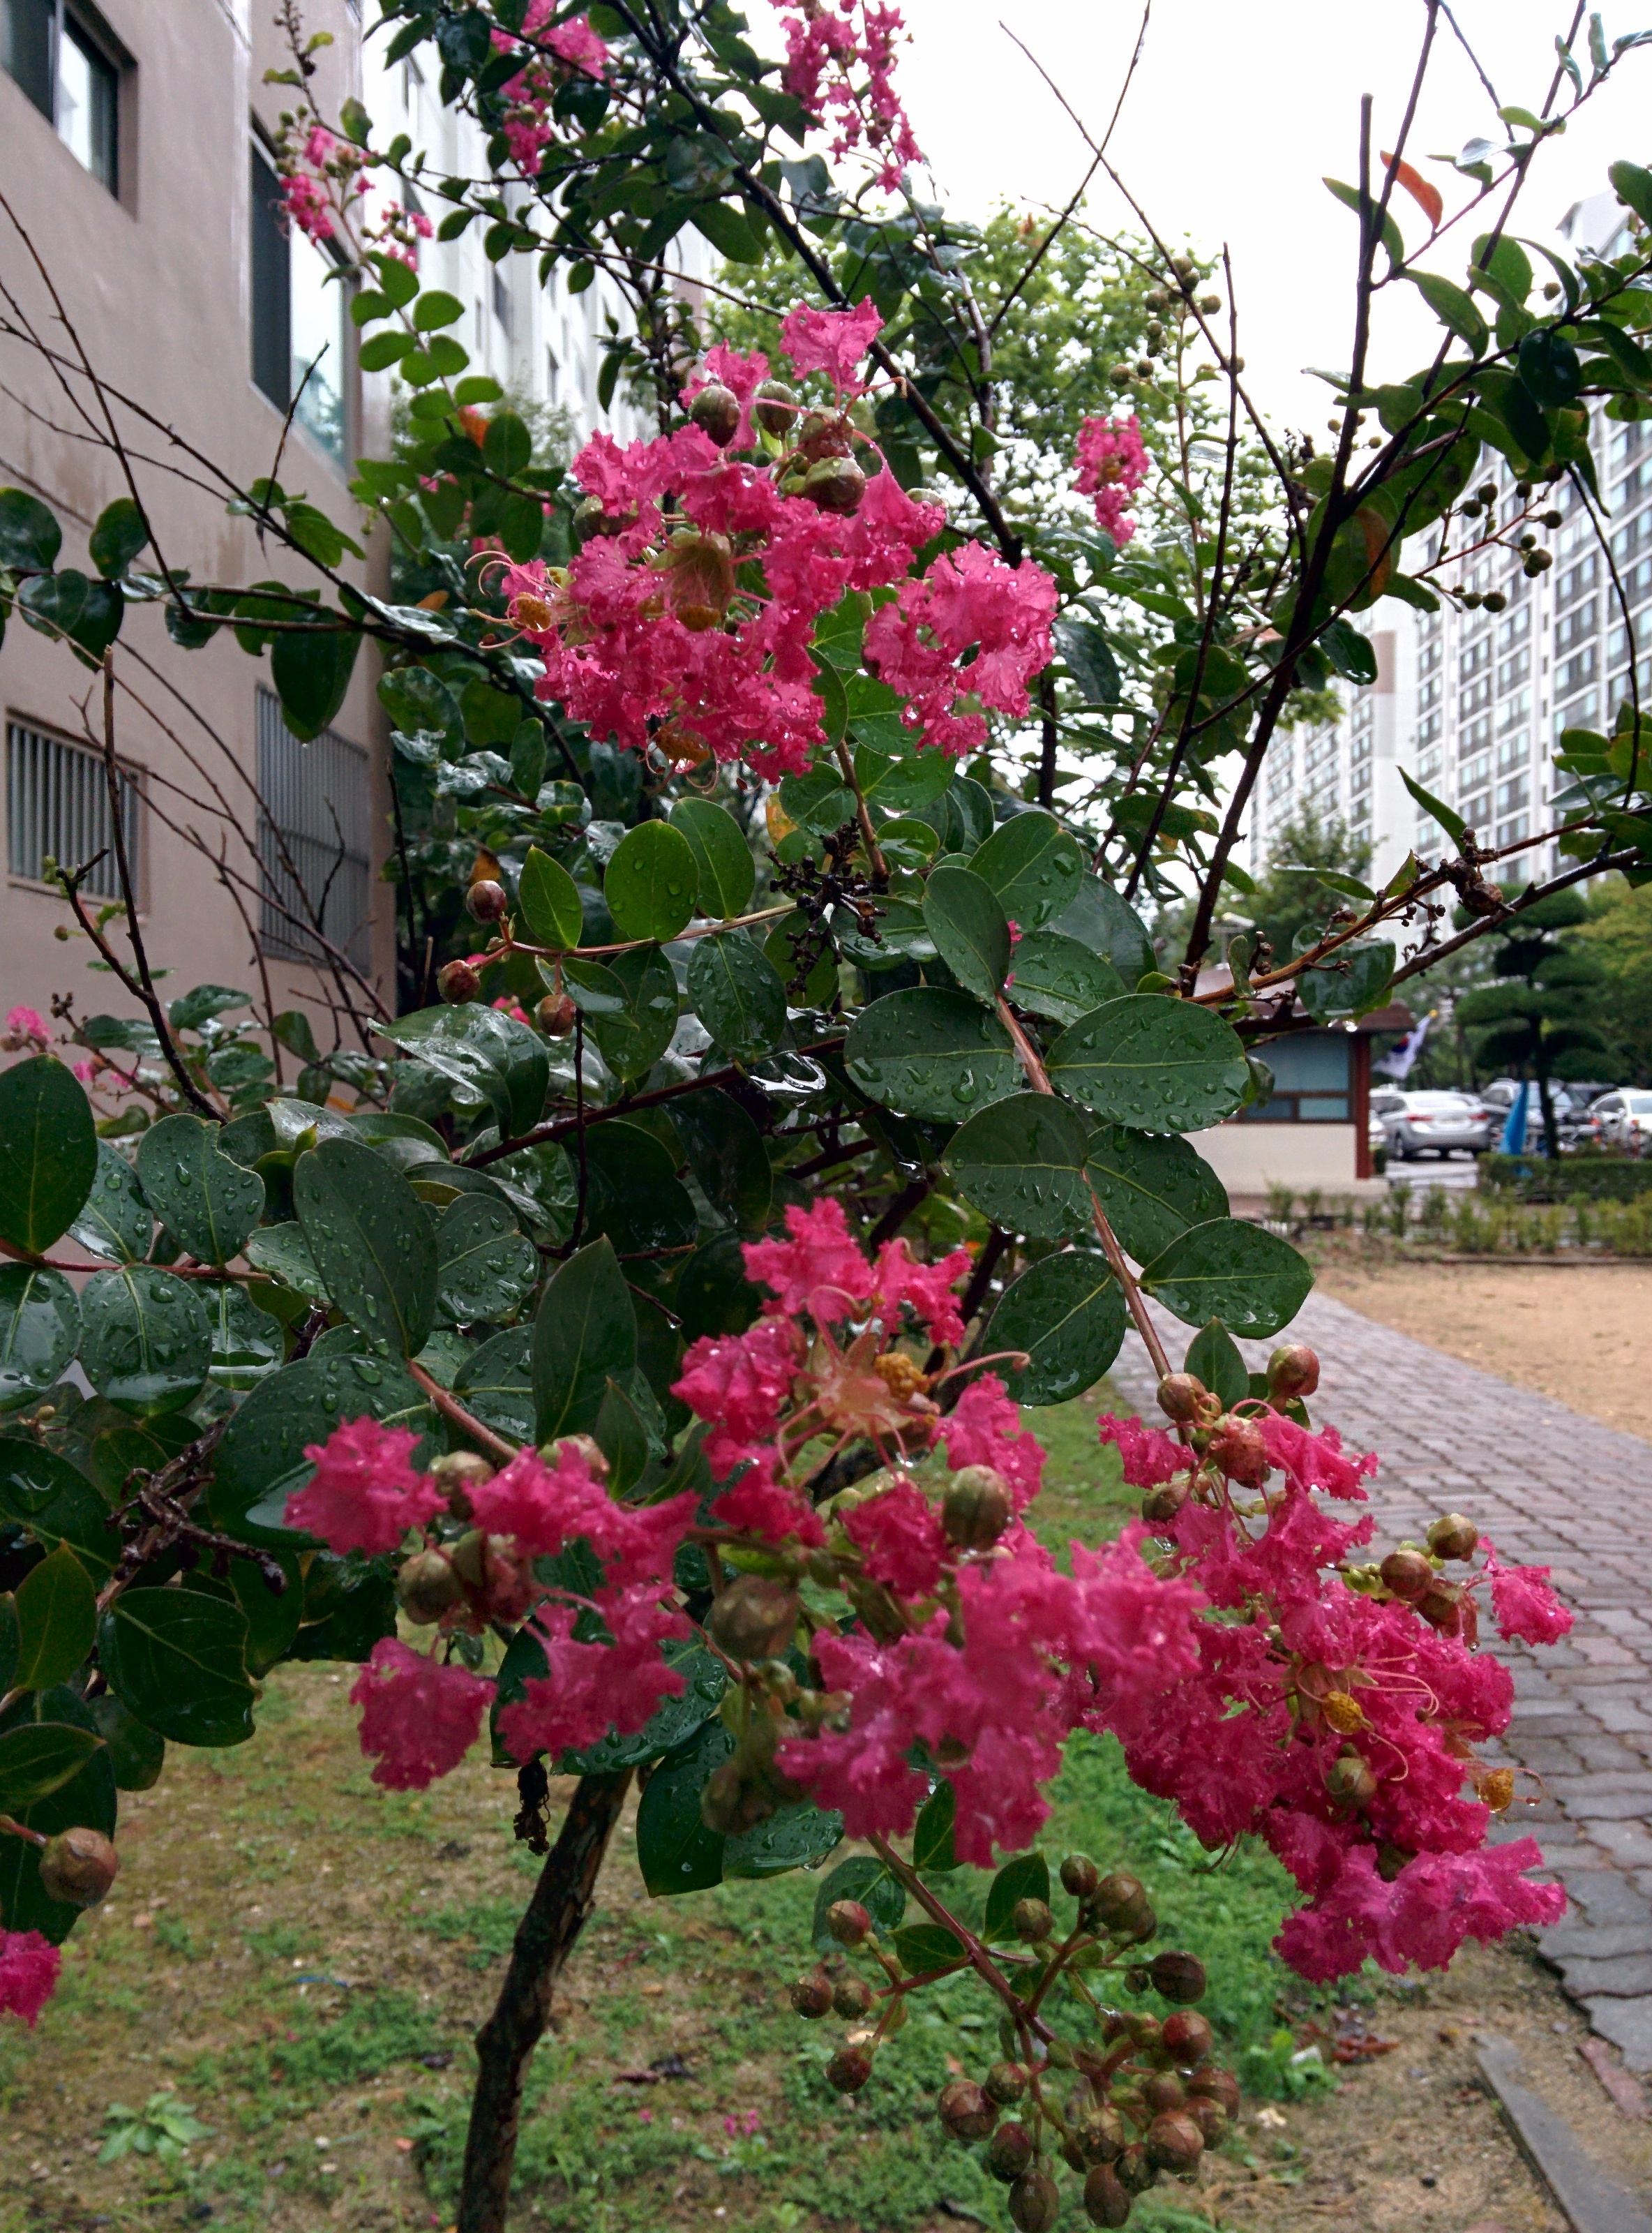 IMG_20150825_182128.jpg 아파트 화단의 배롱나무 붉은꽃 (나무백일홍)